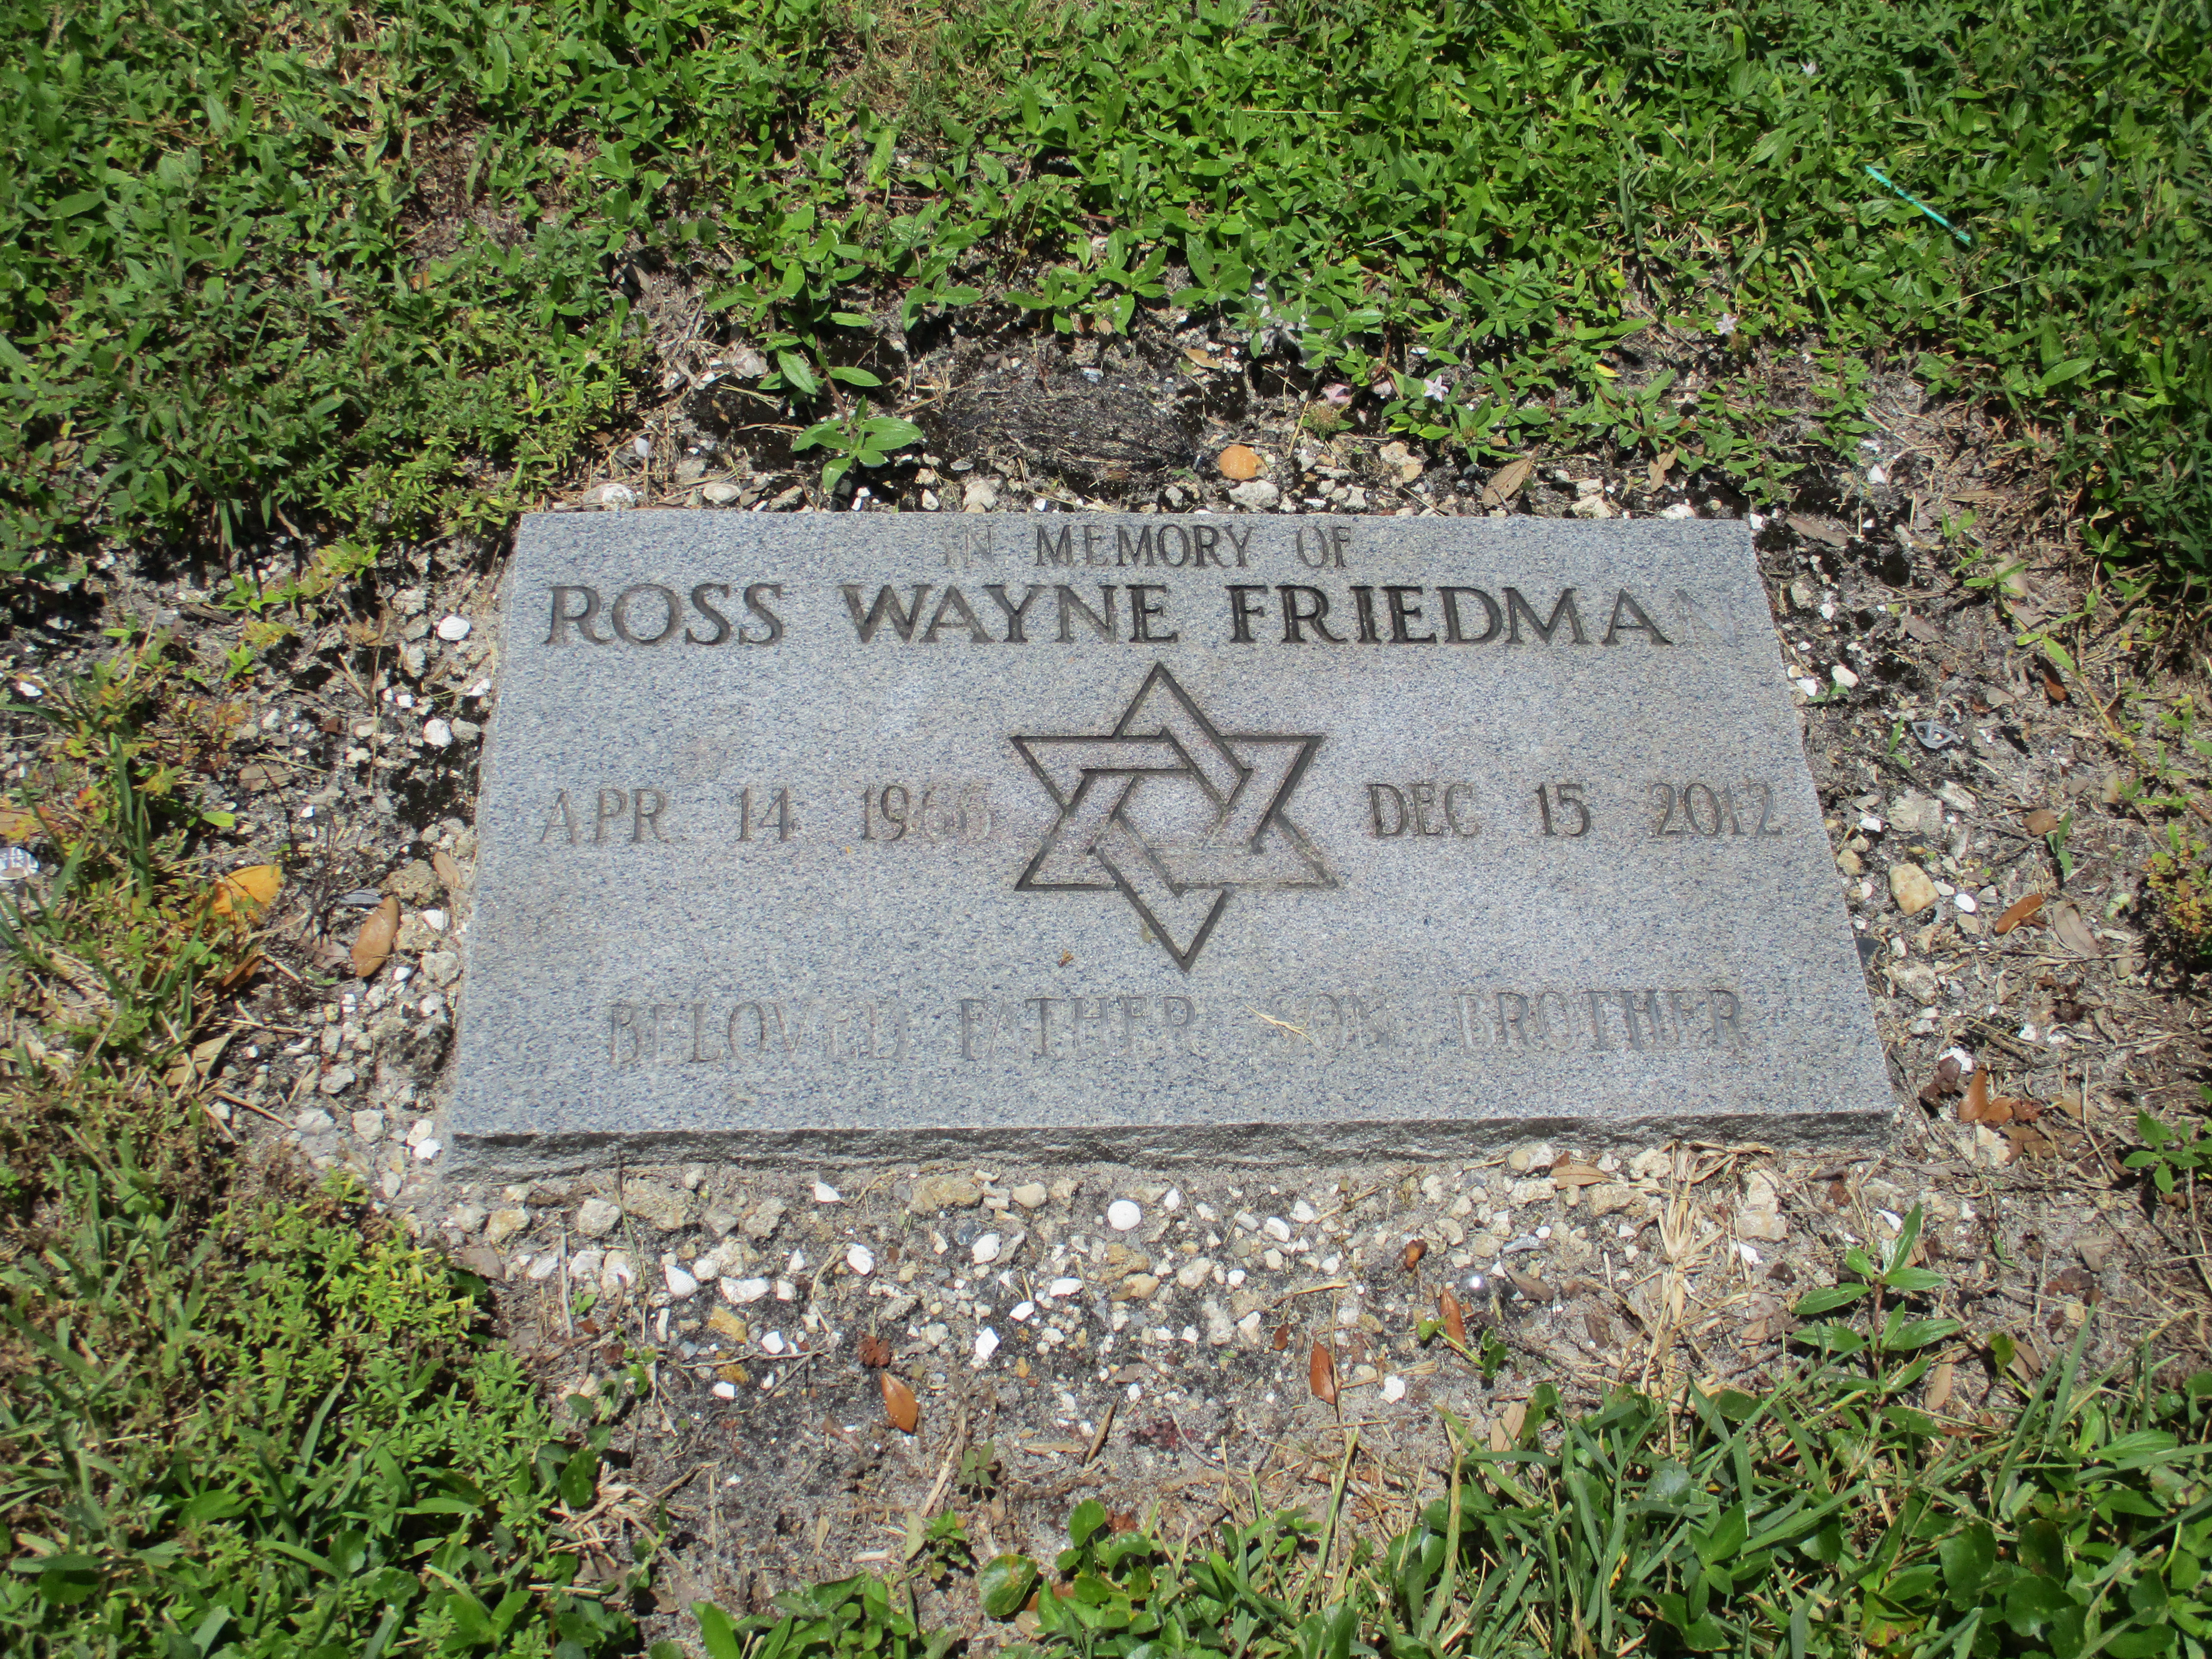 Ross Wayne Friedma